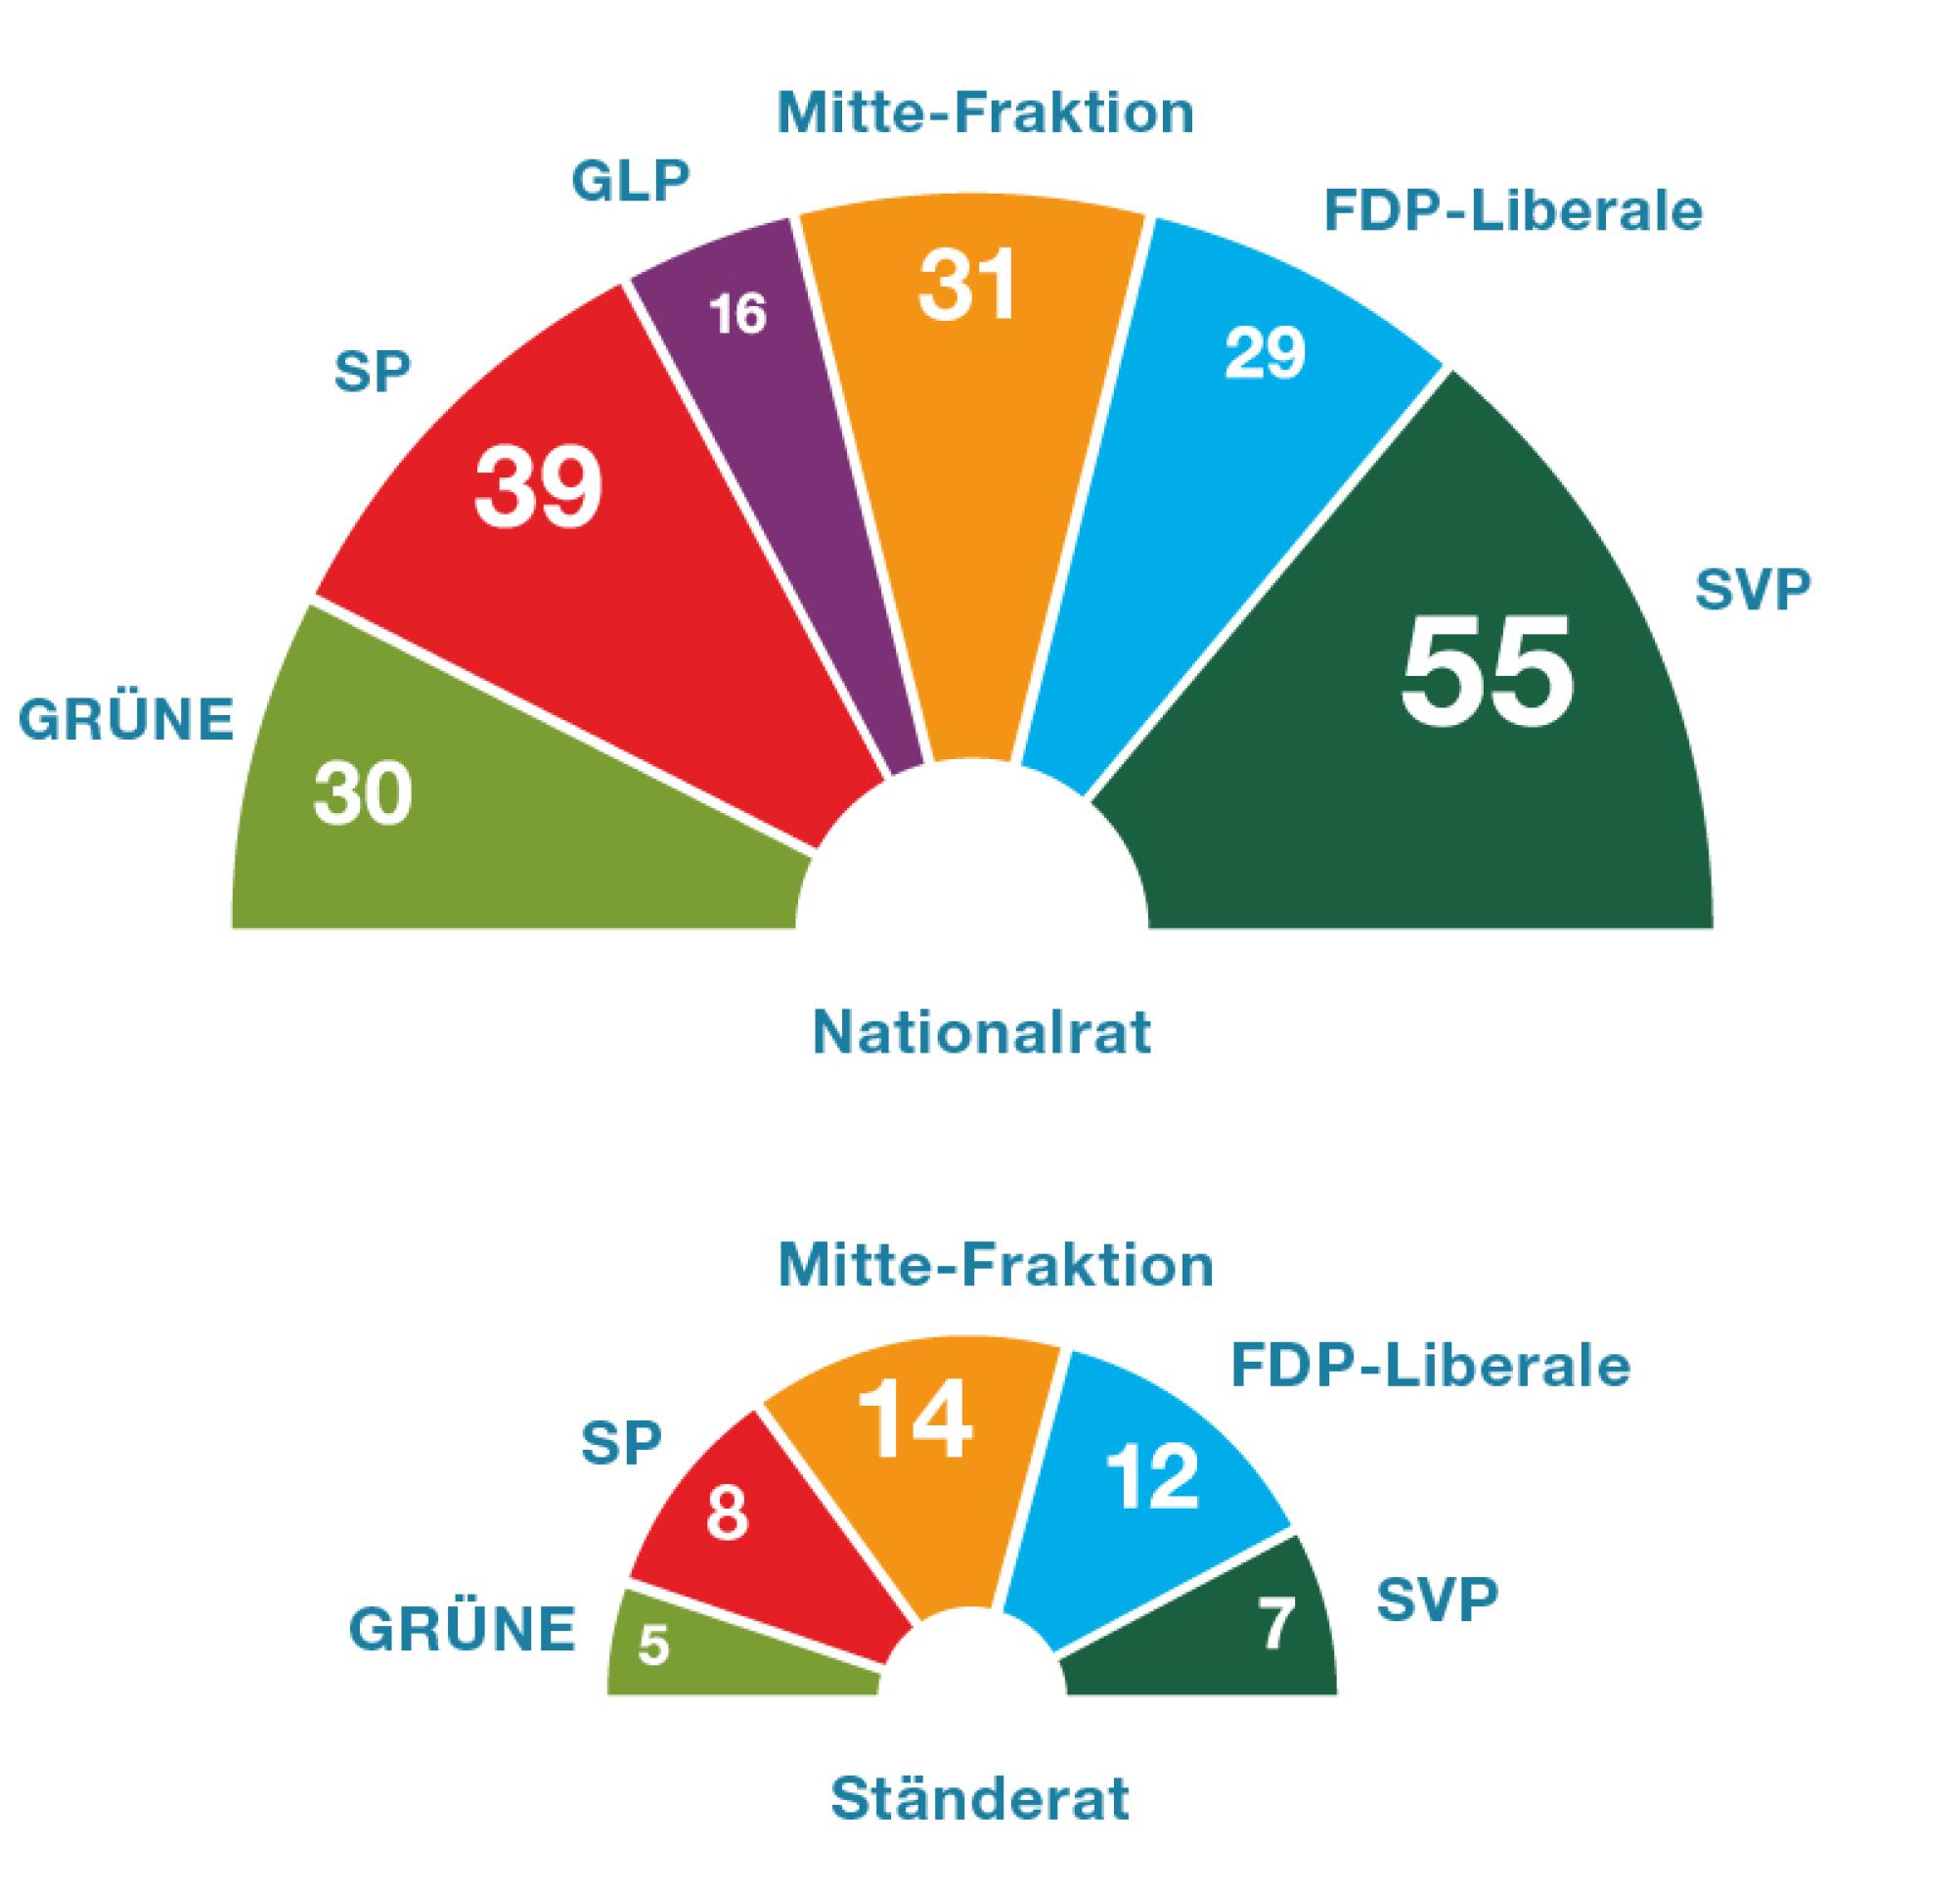 Die Grafik zeigt, dass der Nationalrat aus sechs Fraktionen zusammengesetzt ist. Die SVP-Fraktion ist die stärkste Fraktion, sie hat 55 Mitglieder. Zweitgrösste Fraktion ist die SP-Fraktion mit 39 Mitgliedern. Dann kommen die Mitte-Fraktion mit 31 Mitgliedern, die Grüne Fraktion mit 30 Mitgliedern und die FDP-Fraktion mit 29 Mitgliedern. Kleinste Fraktion ist die Grünliberale Fraktion mit 16 Mitgliedern.  Die Grafik zeigt, dass der Ständerat aus fünf Fraktionen zusammengesetzt ist. Die stärksten Fraktionen sind die Mitte-Fraktion mit 14 Mitgliedern und die FDP-Fraktion mit 12 Mitgliedern. Die SP-Fraktion hat 8 Mitglieder, die SVP-Fraktion 7 Mitglieder und die Grüne-Fraktion 5 Mitglieder.